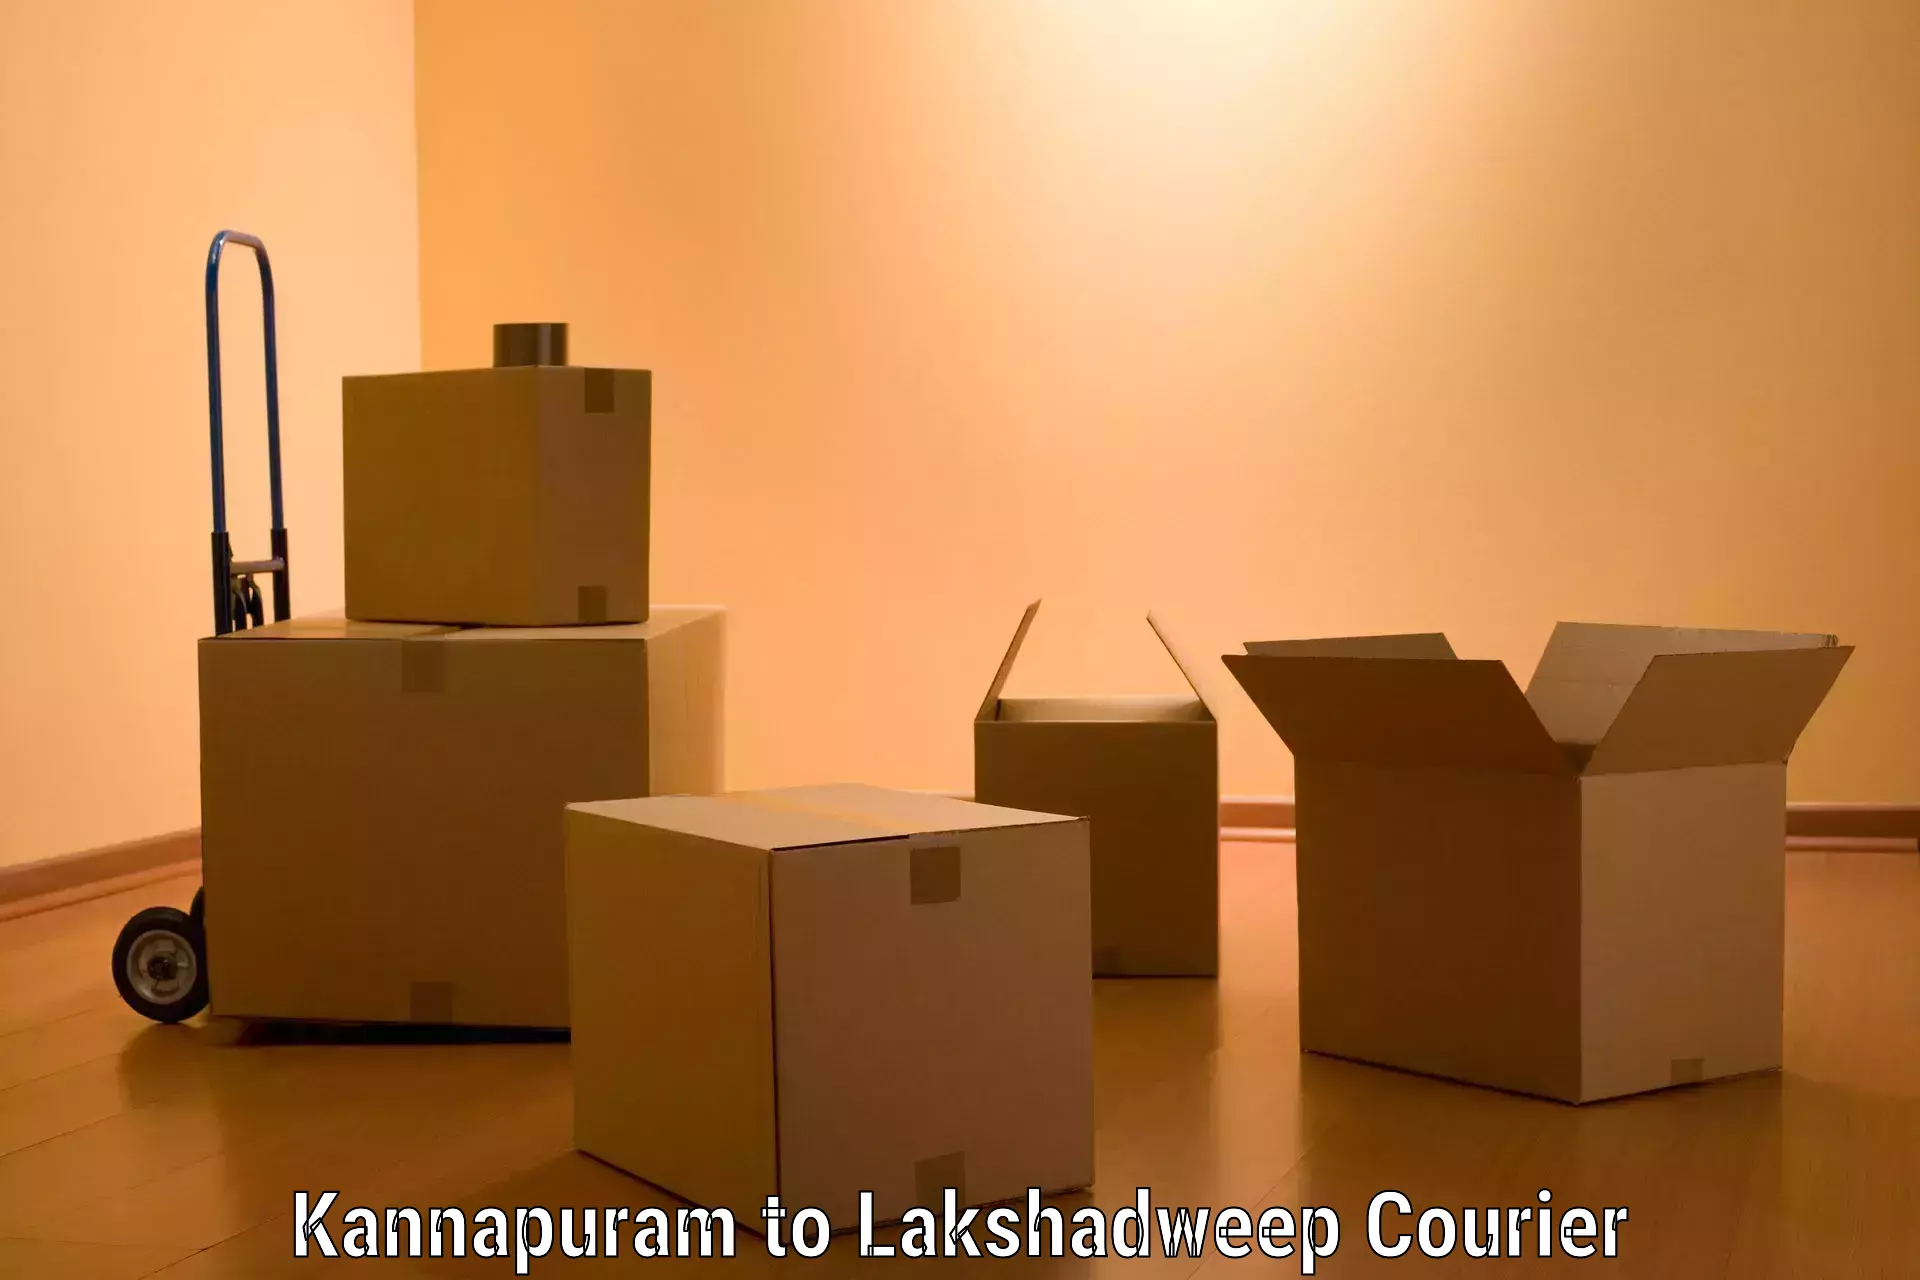 Nationwide furniture transport in Kannapuram to Lakshadweep